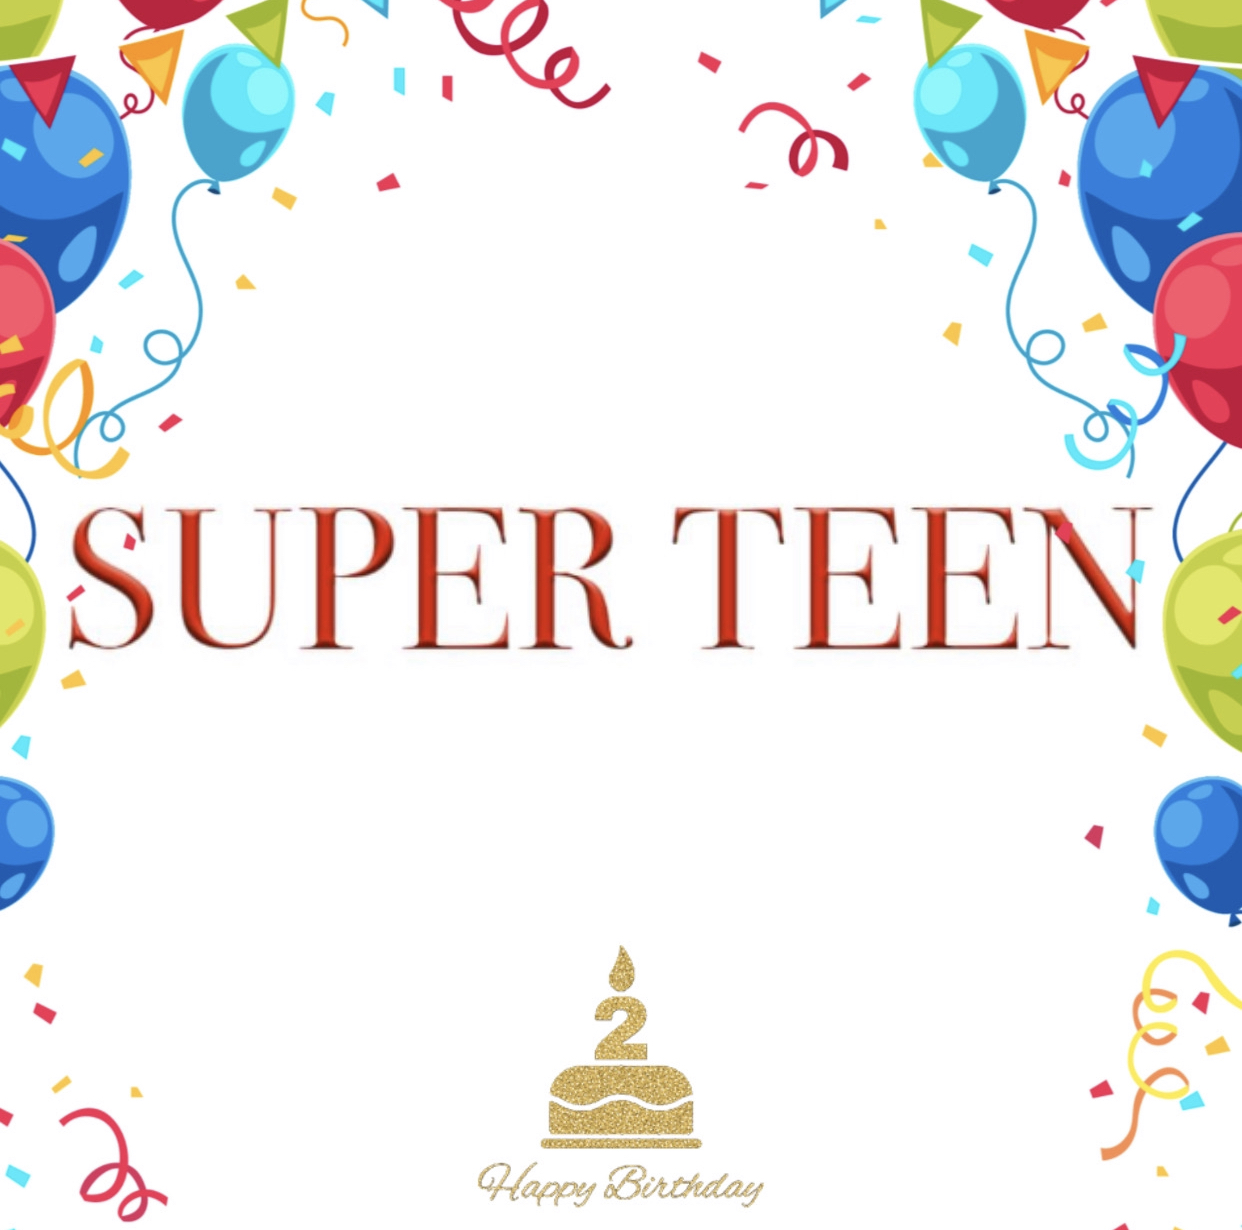 Rođendanski Q&A: Superteen je odgovorio na sva vaša pitanja!